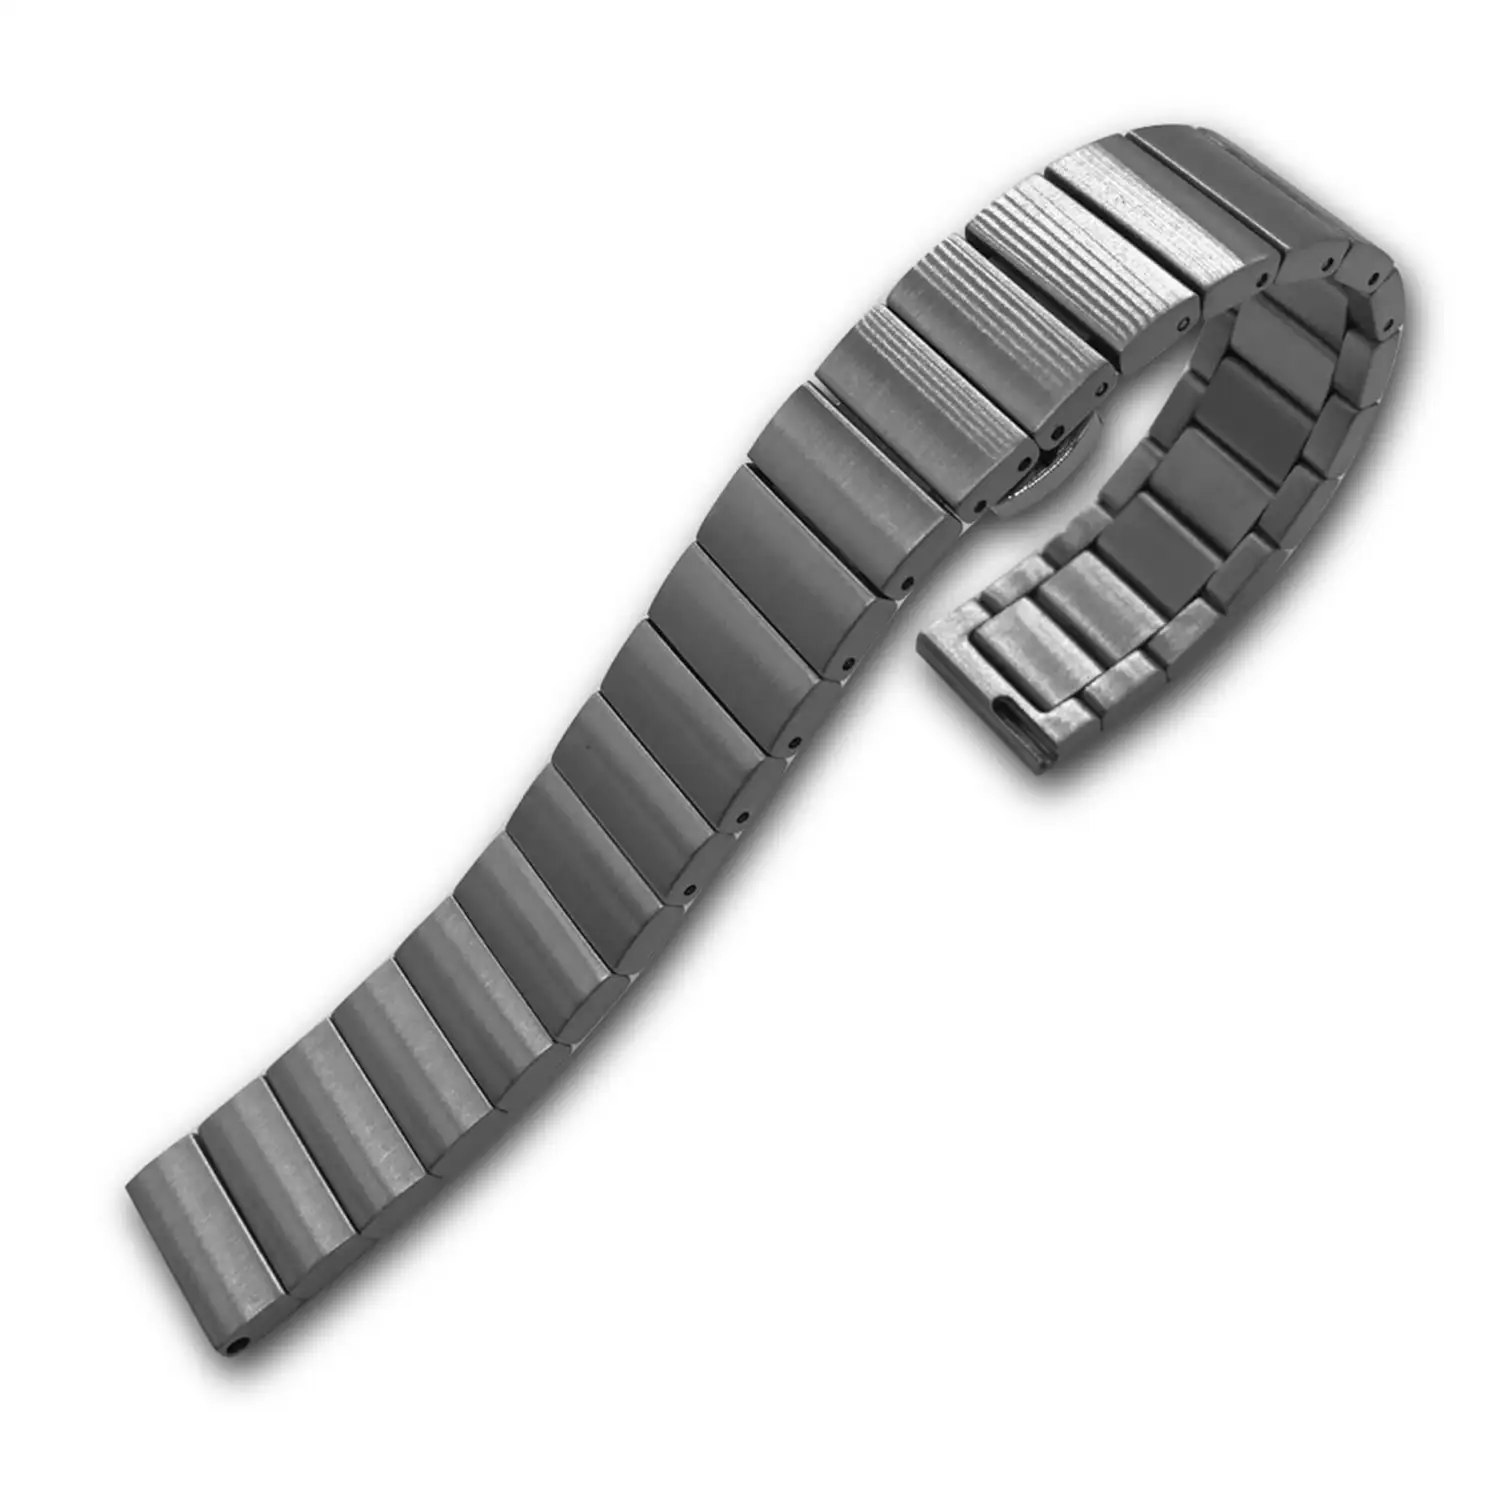 Correa universal de acero inoxidable para relojes de 20mm.Sistema